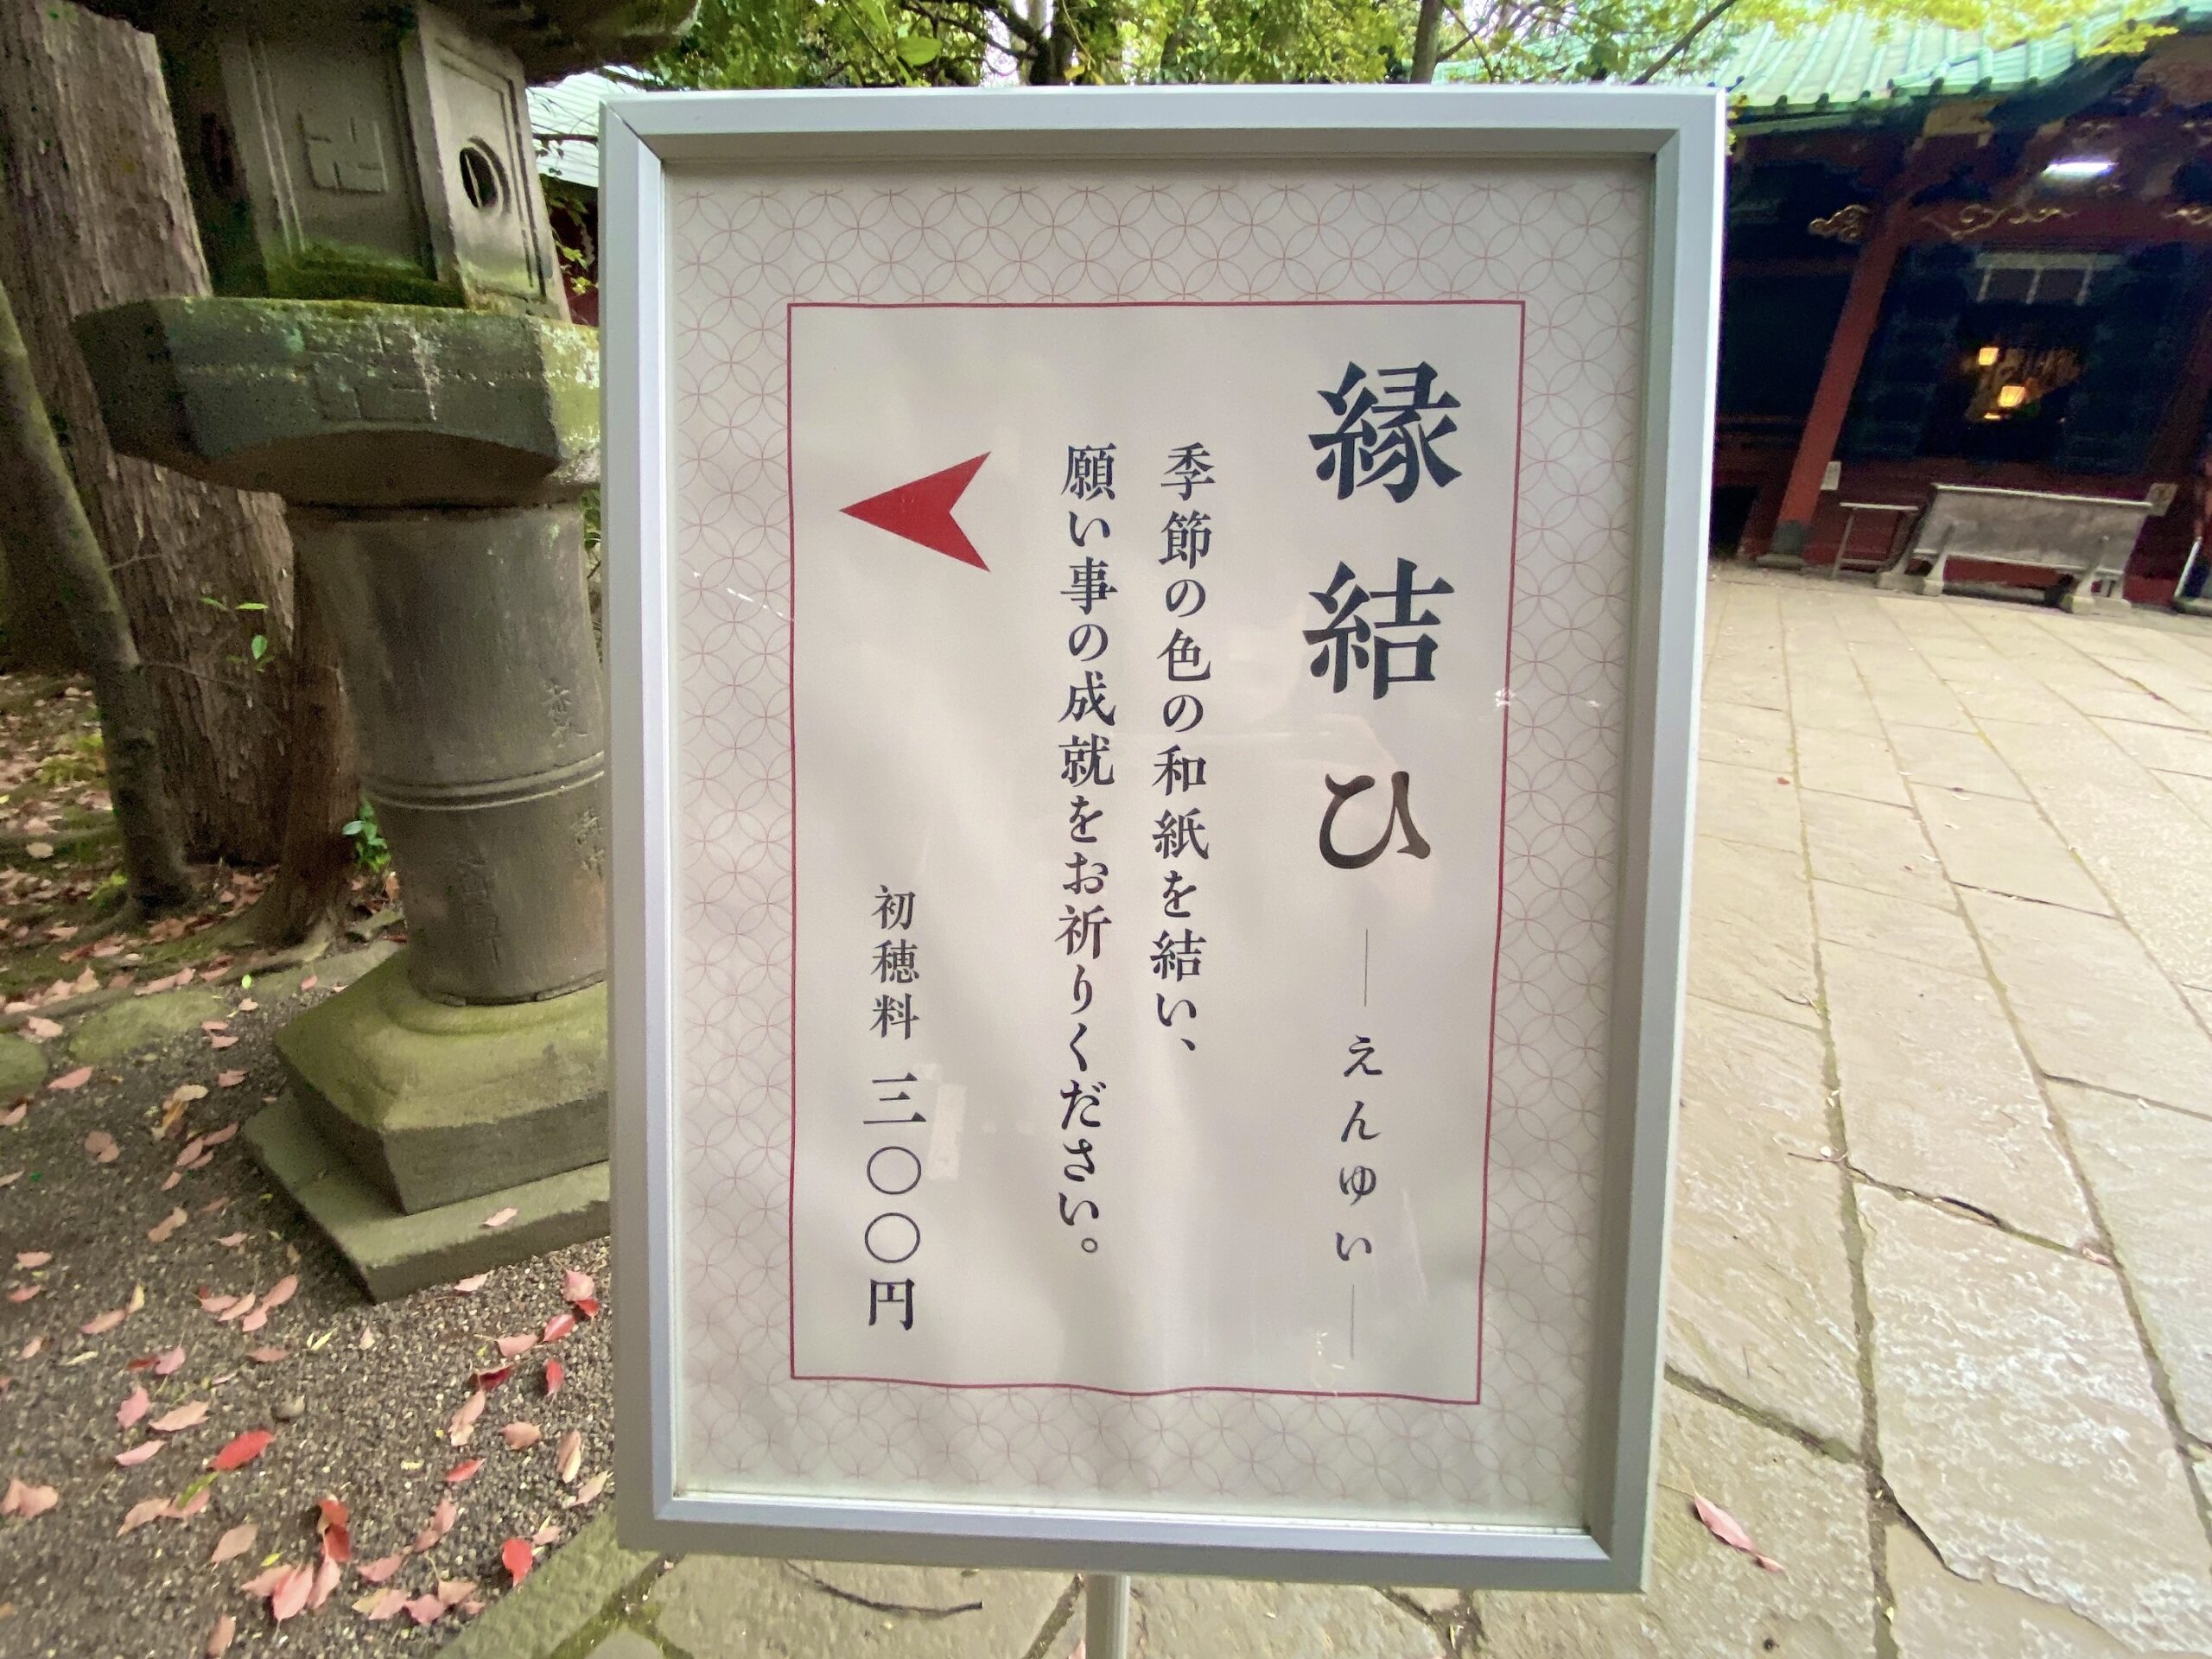 赤坂氷川神社の縁結ひで恋愛成就